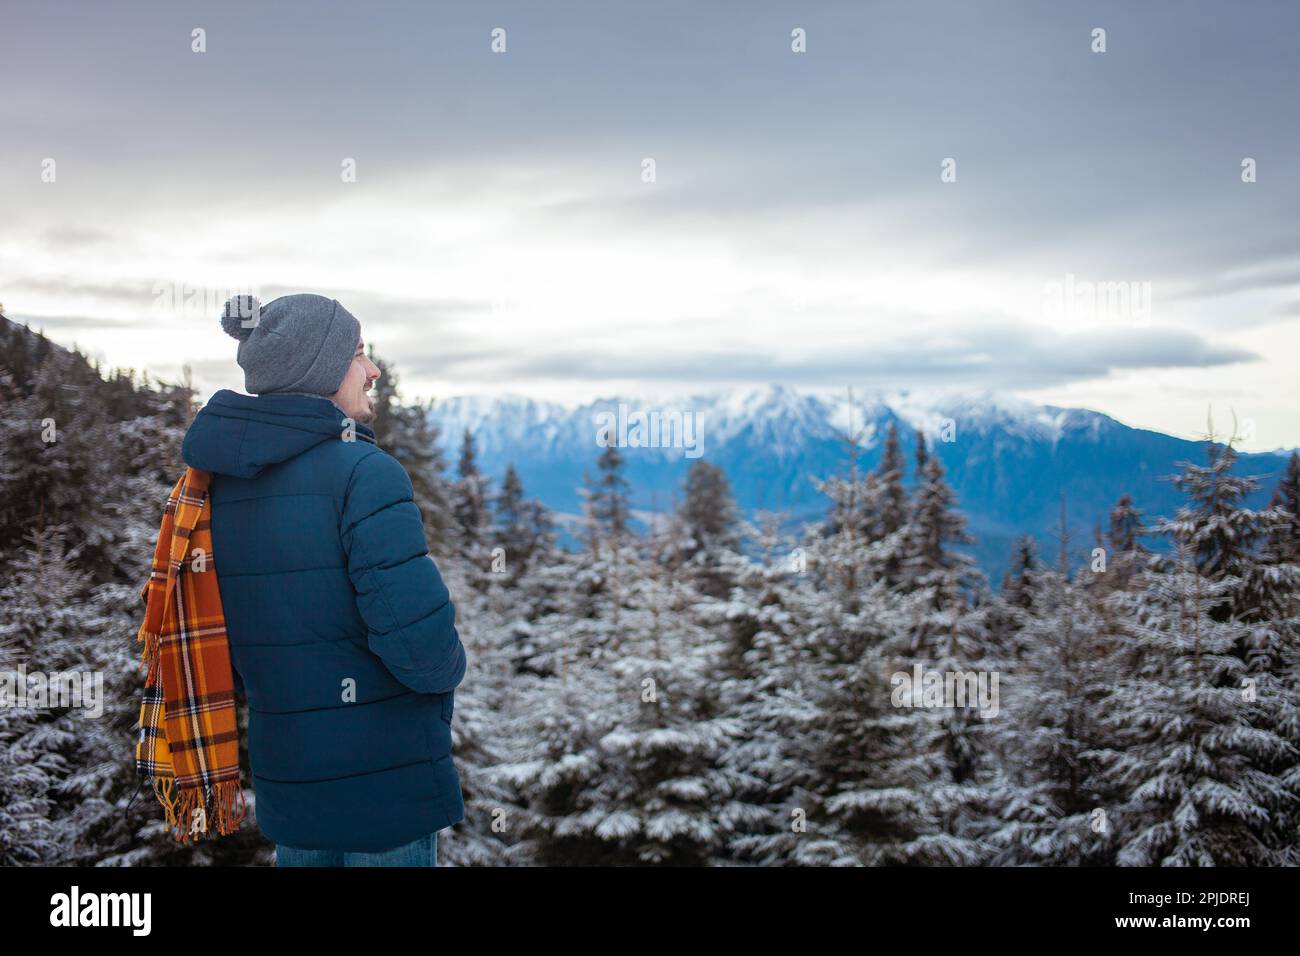 L'uomo ama guardare le montagne, il bellissimo panorama, la foresta e il cielo, l'inverno, la neve, viaggi, resort, escursioni, bellezza della natura. sciarpa arancione Foto Stock